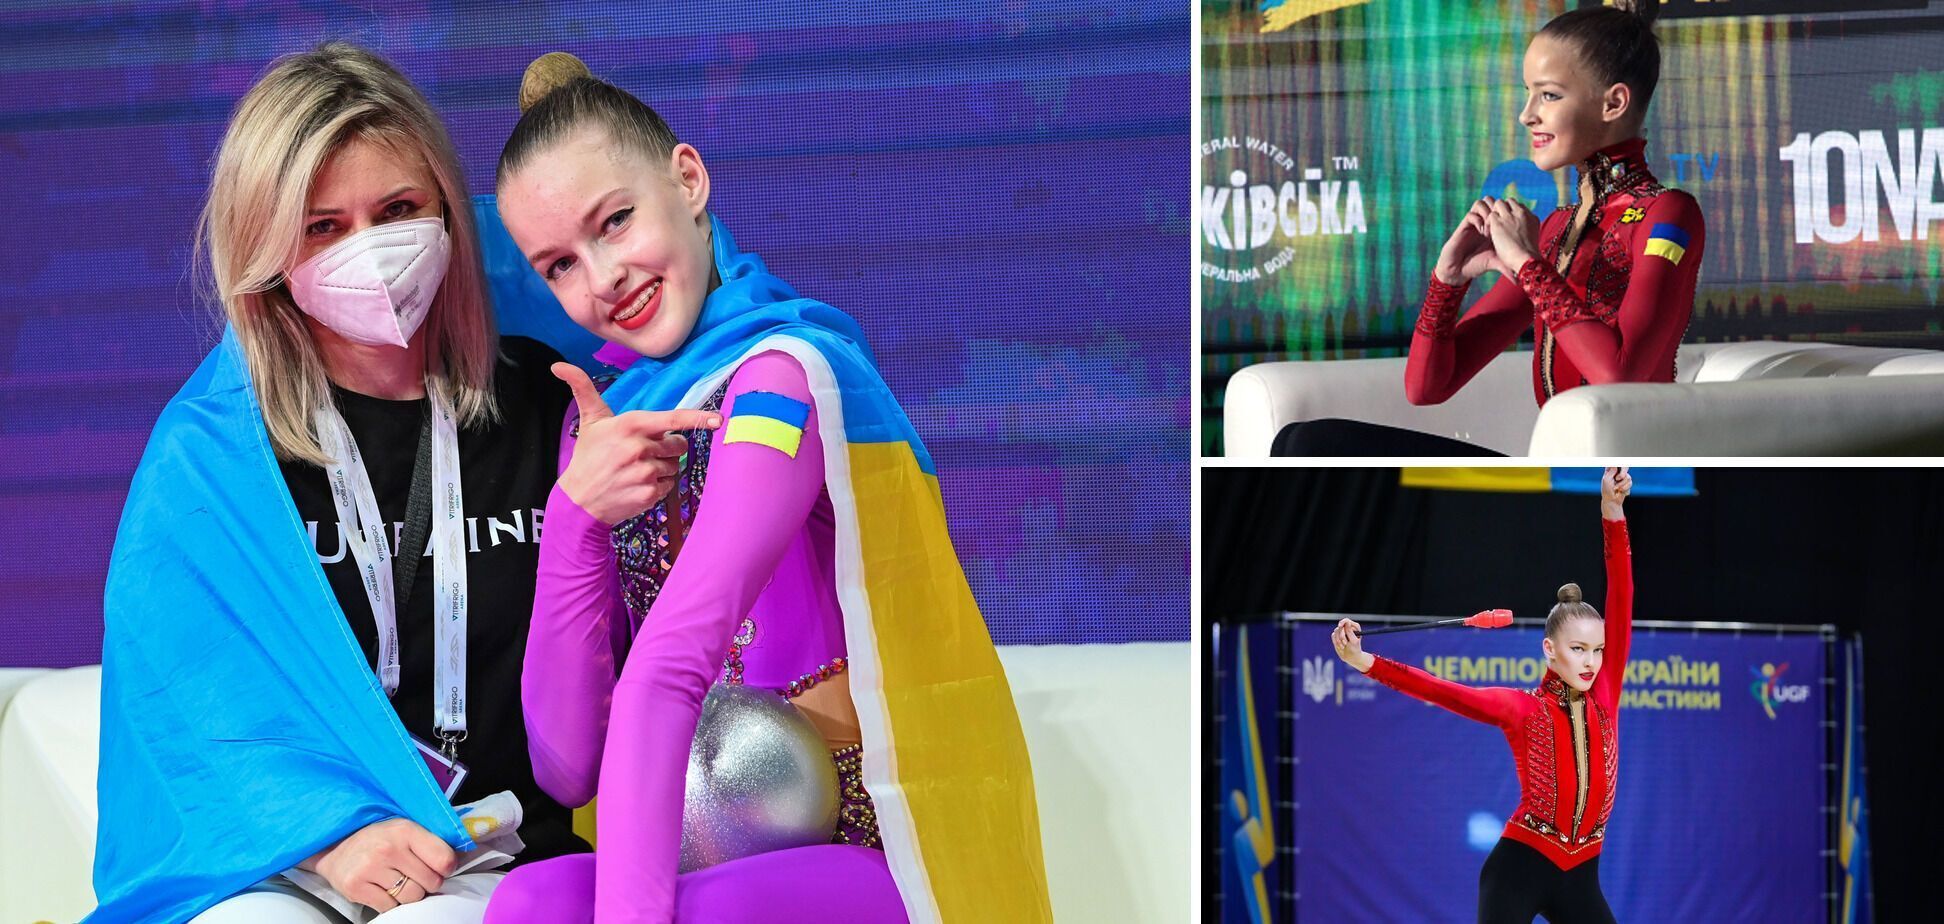 7-кратная чемпионка Украины объяснила свой отказ от украинского гражданства, упомянув Бахмут